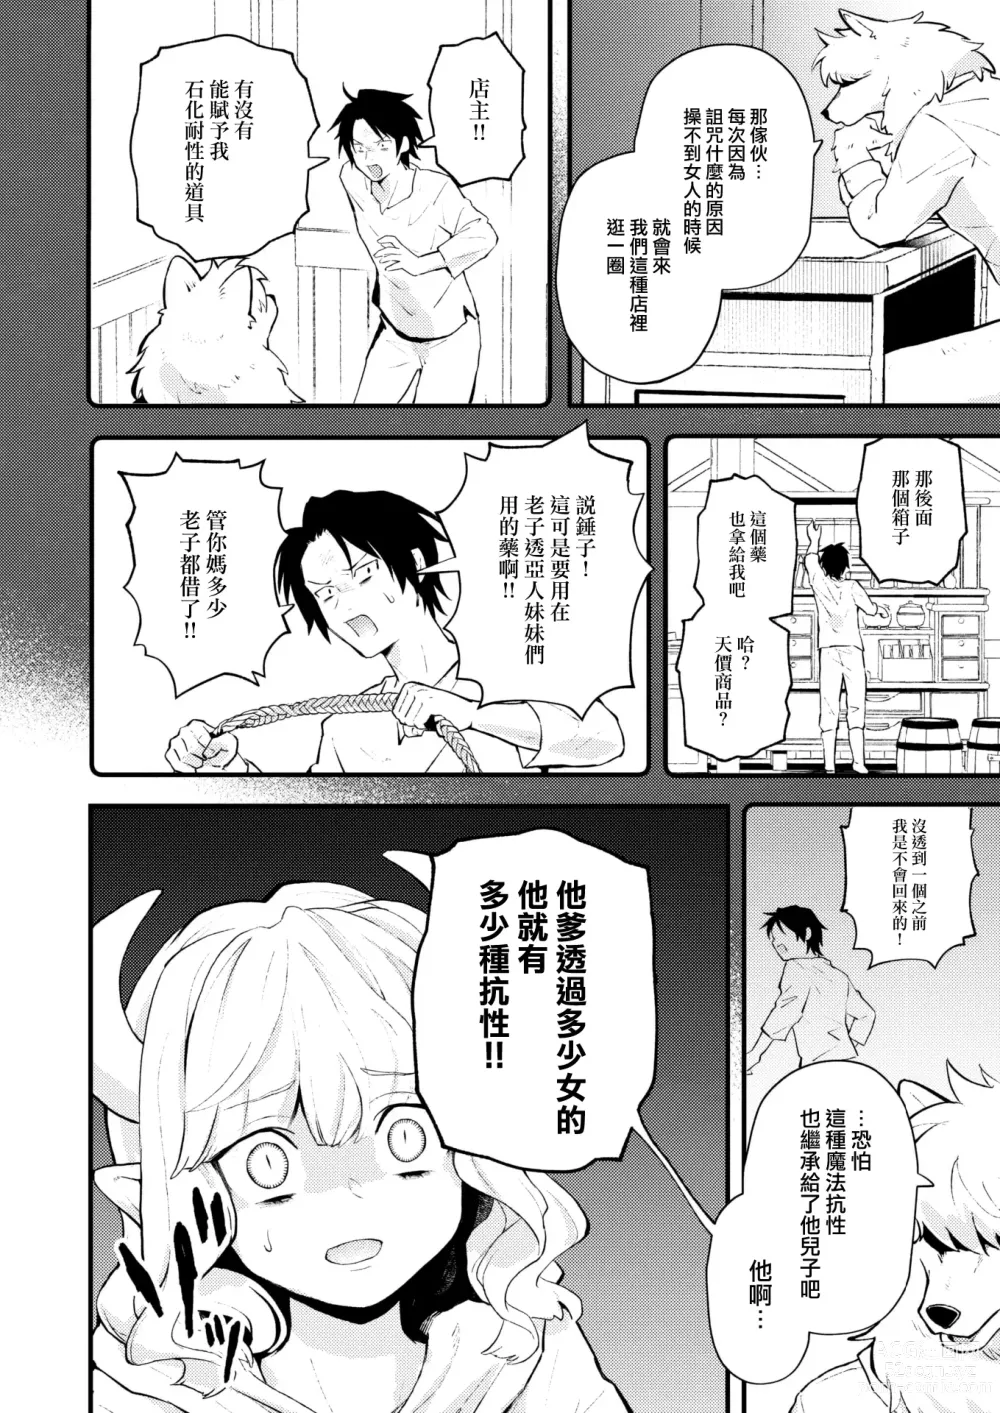 Page 7 of manga Shakkin Jigoku wa Owaranai